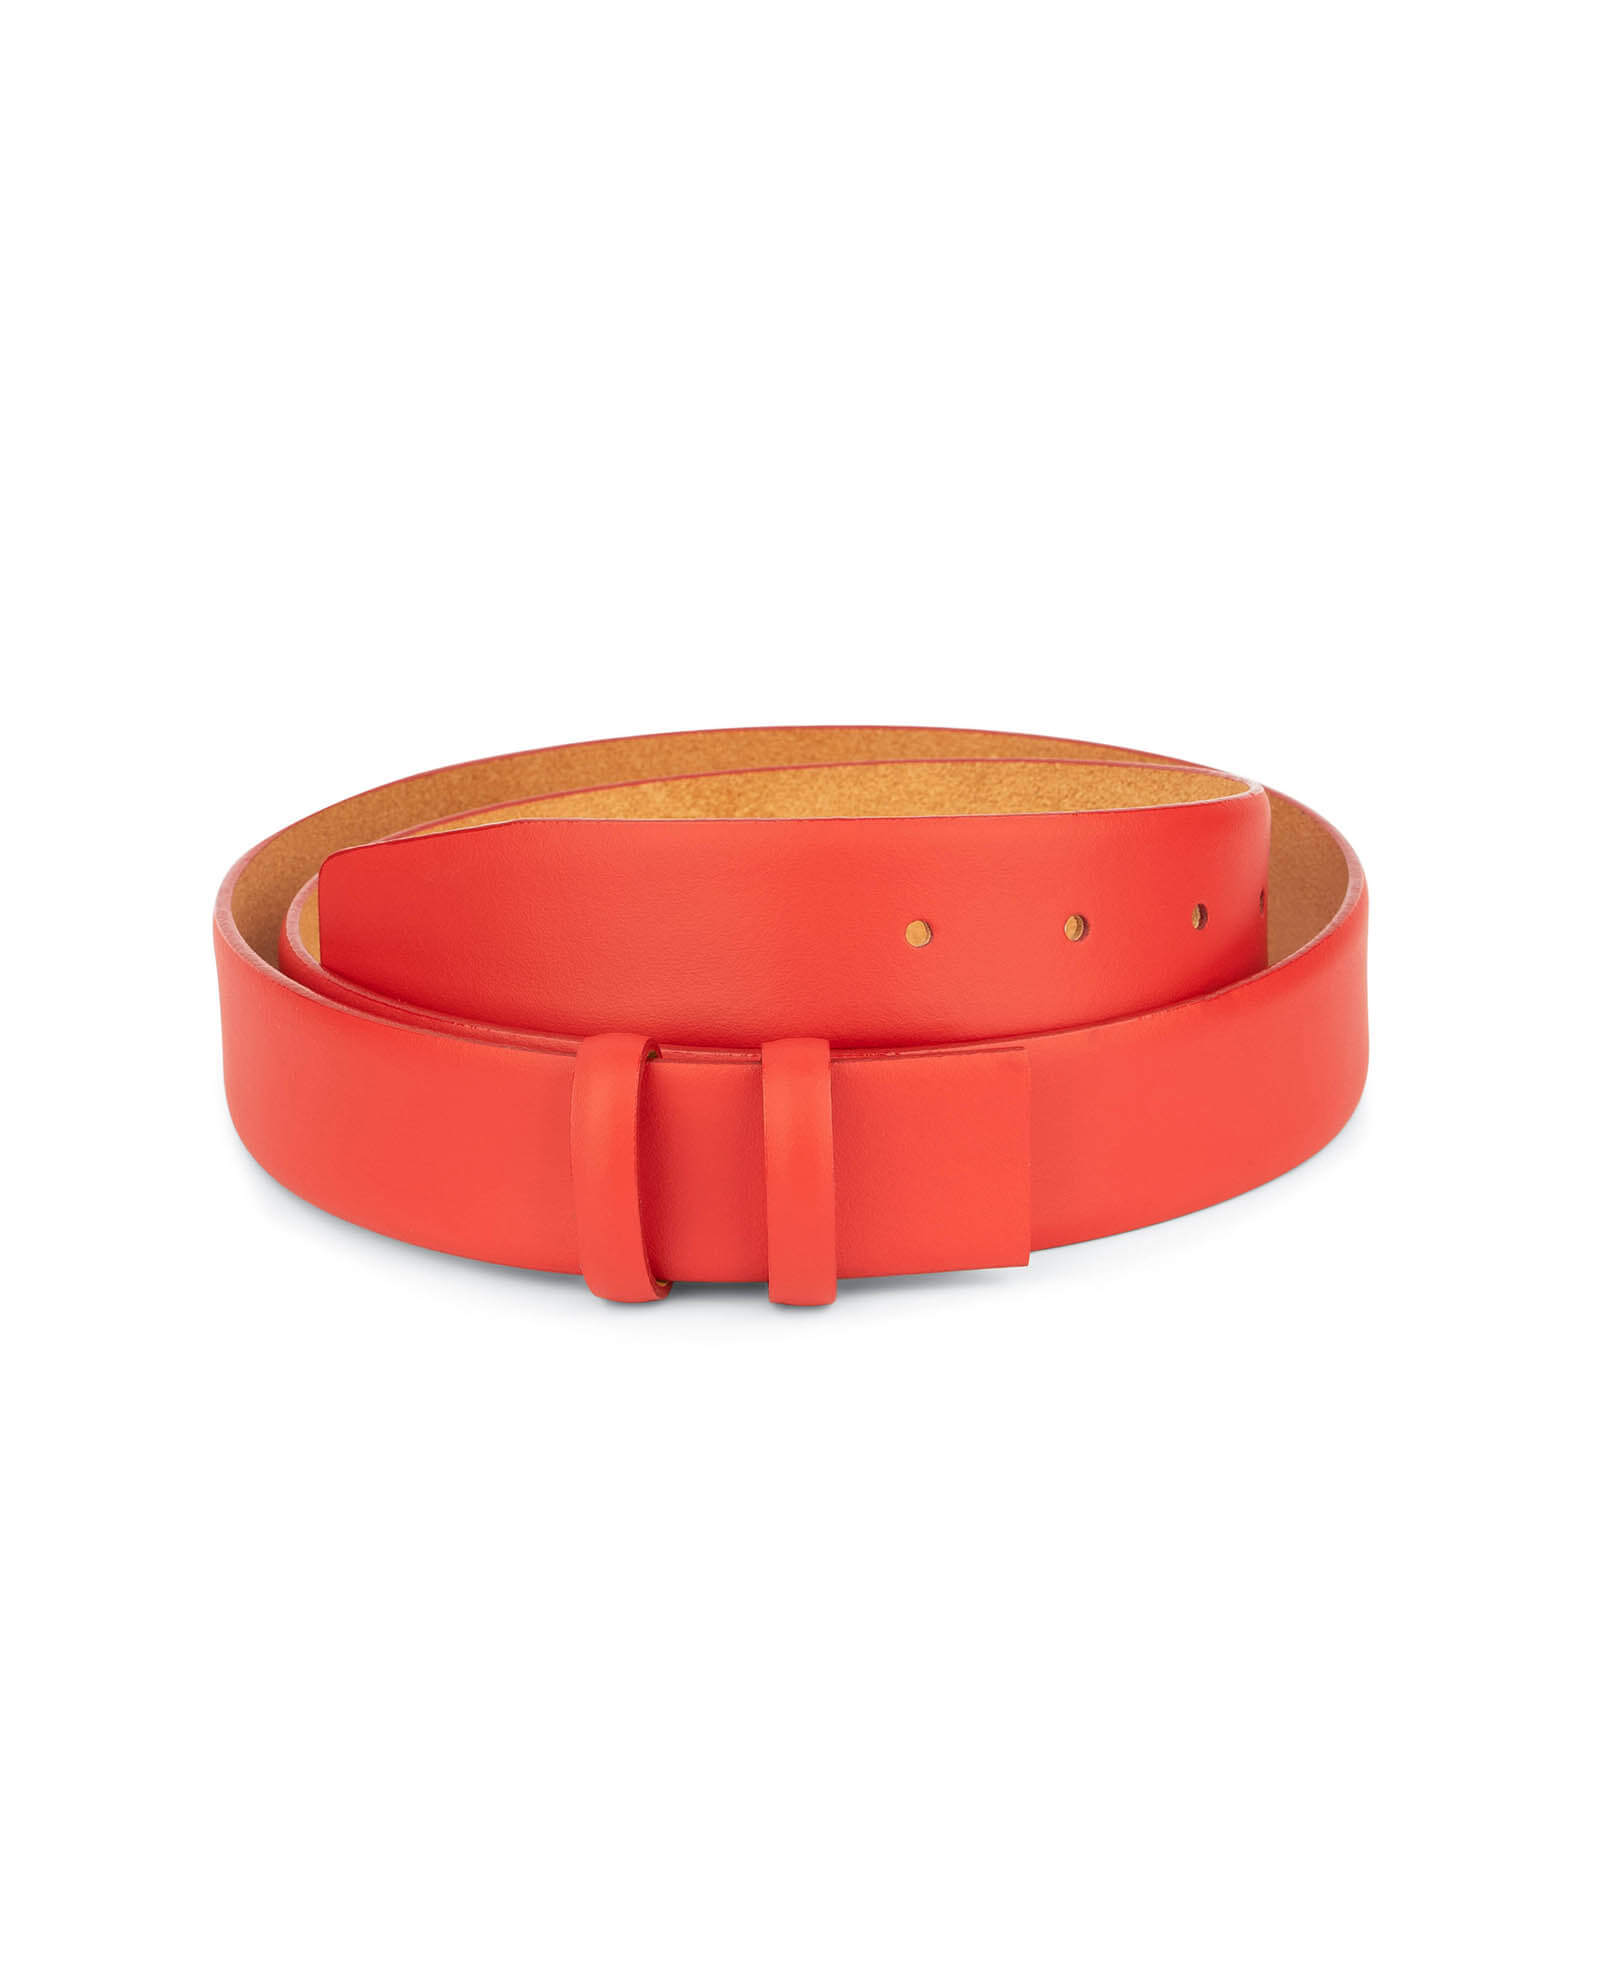 Buy Mens Red Leather Belt Strap | LeatherBeltsOnline.com